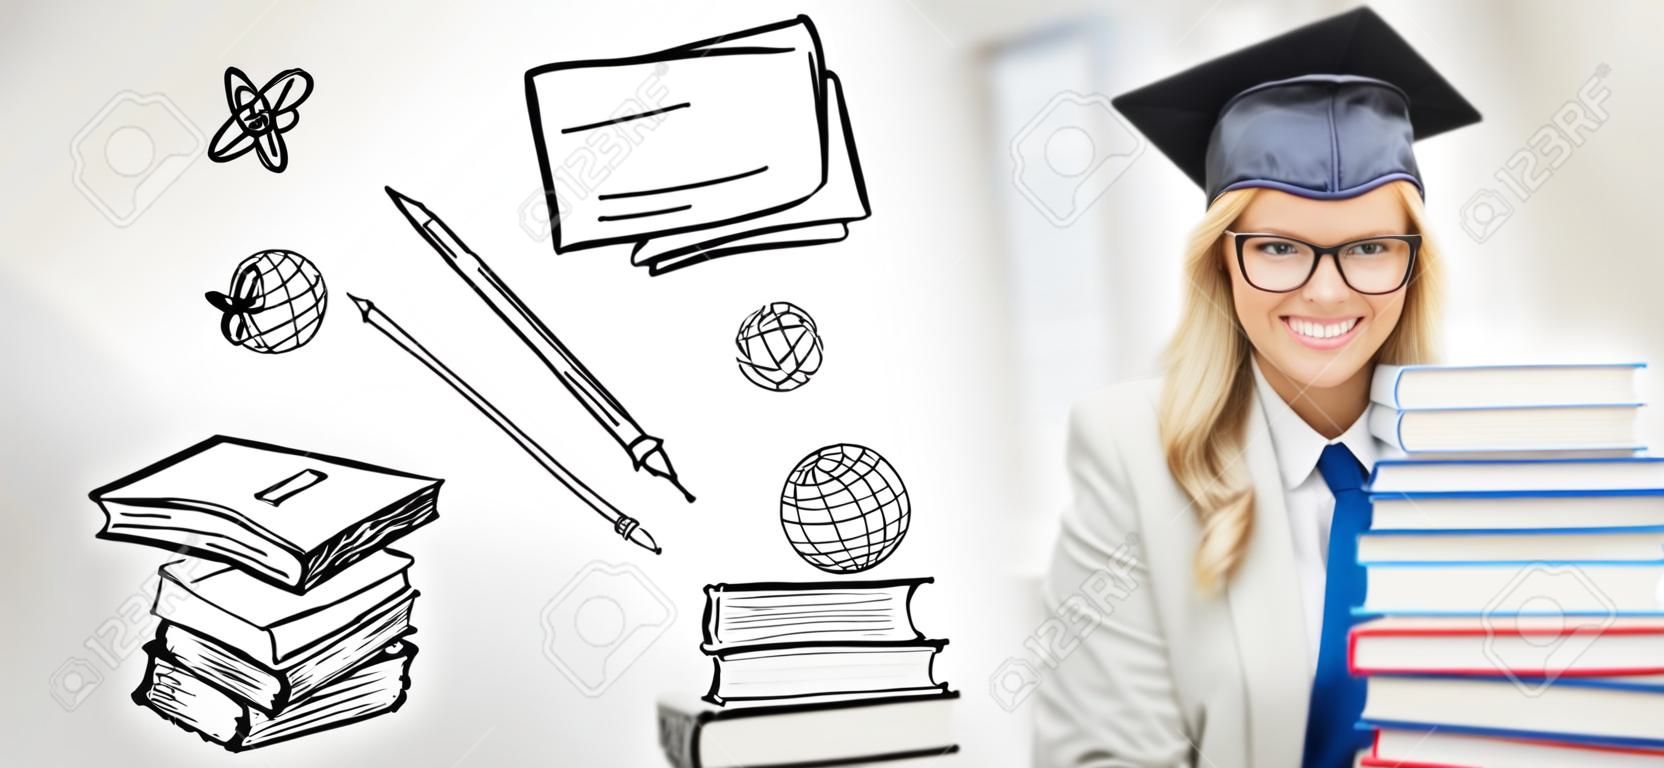 教育、学校、卒業、人々 の概念 - 幸せな学生少女やいたずら書きを書籍のスタックと卒業の帽子の女性